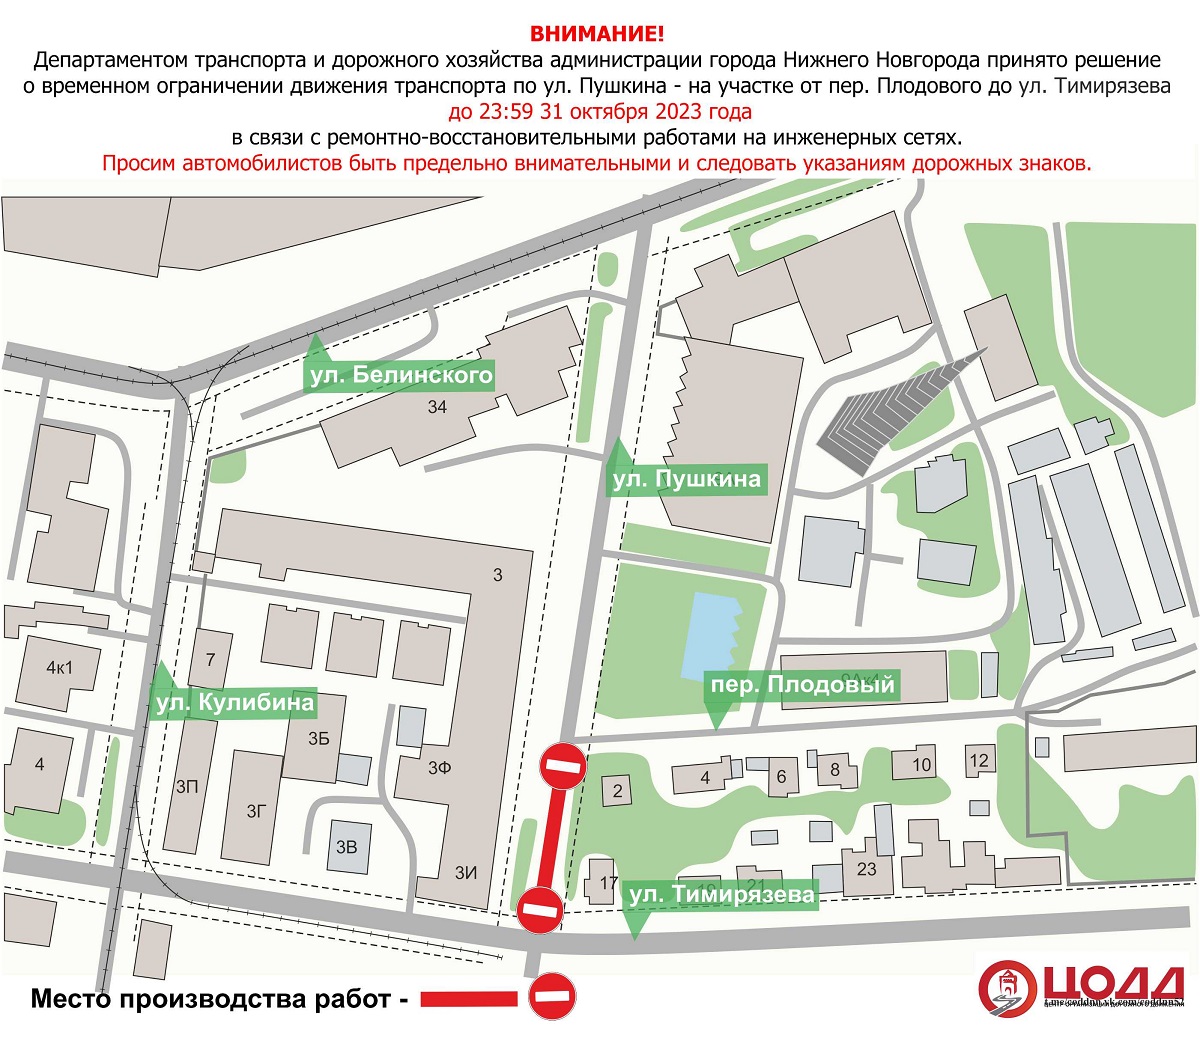 Движение по улице Пушкина будет перекрыто до 31 октября